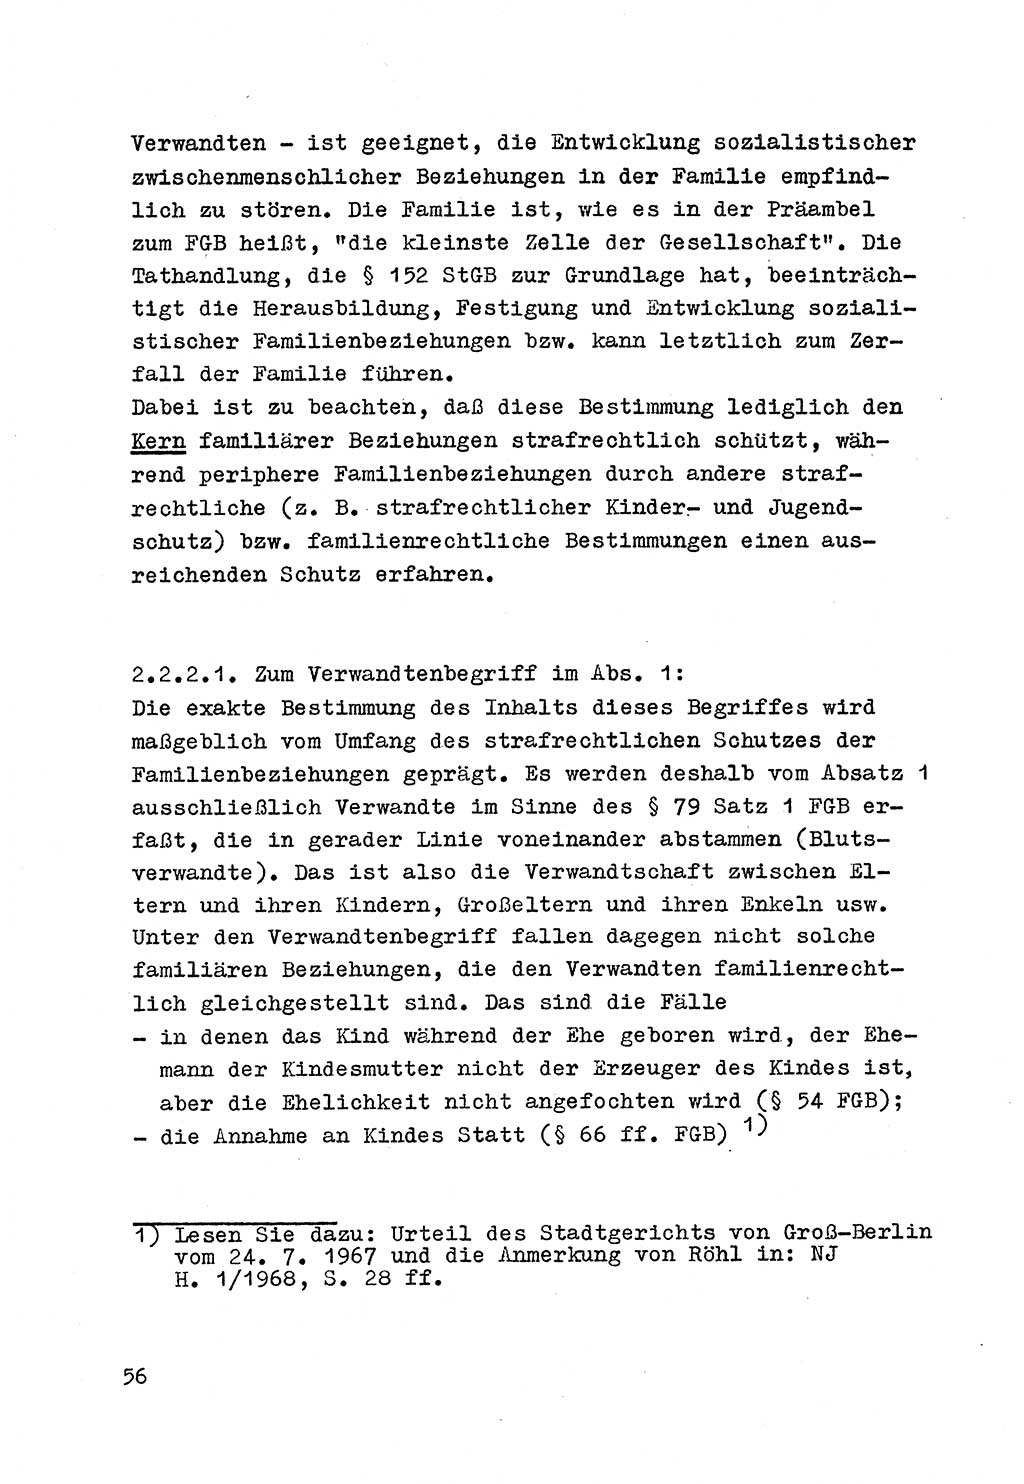 Strafrecht der DDR (Deutsche Demokratische Republik), Besonderer Teil, Lehrmaterial, Heft 4 1969, Seite 56 (Strafr. DDR BT Lehrmat. H. 4 1969, S. 56)